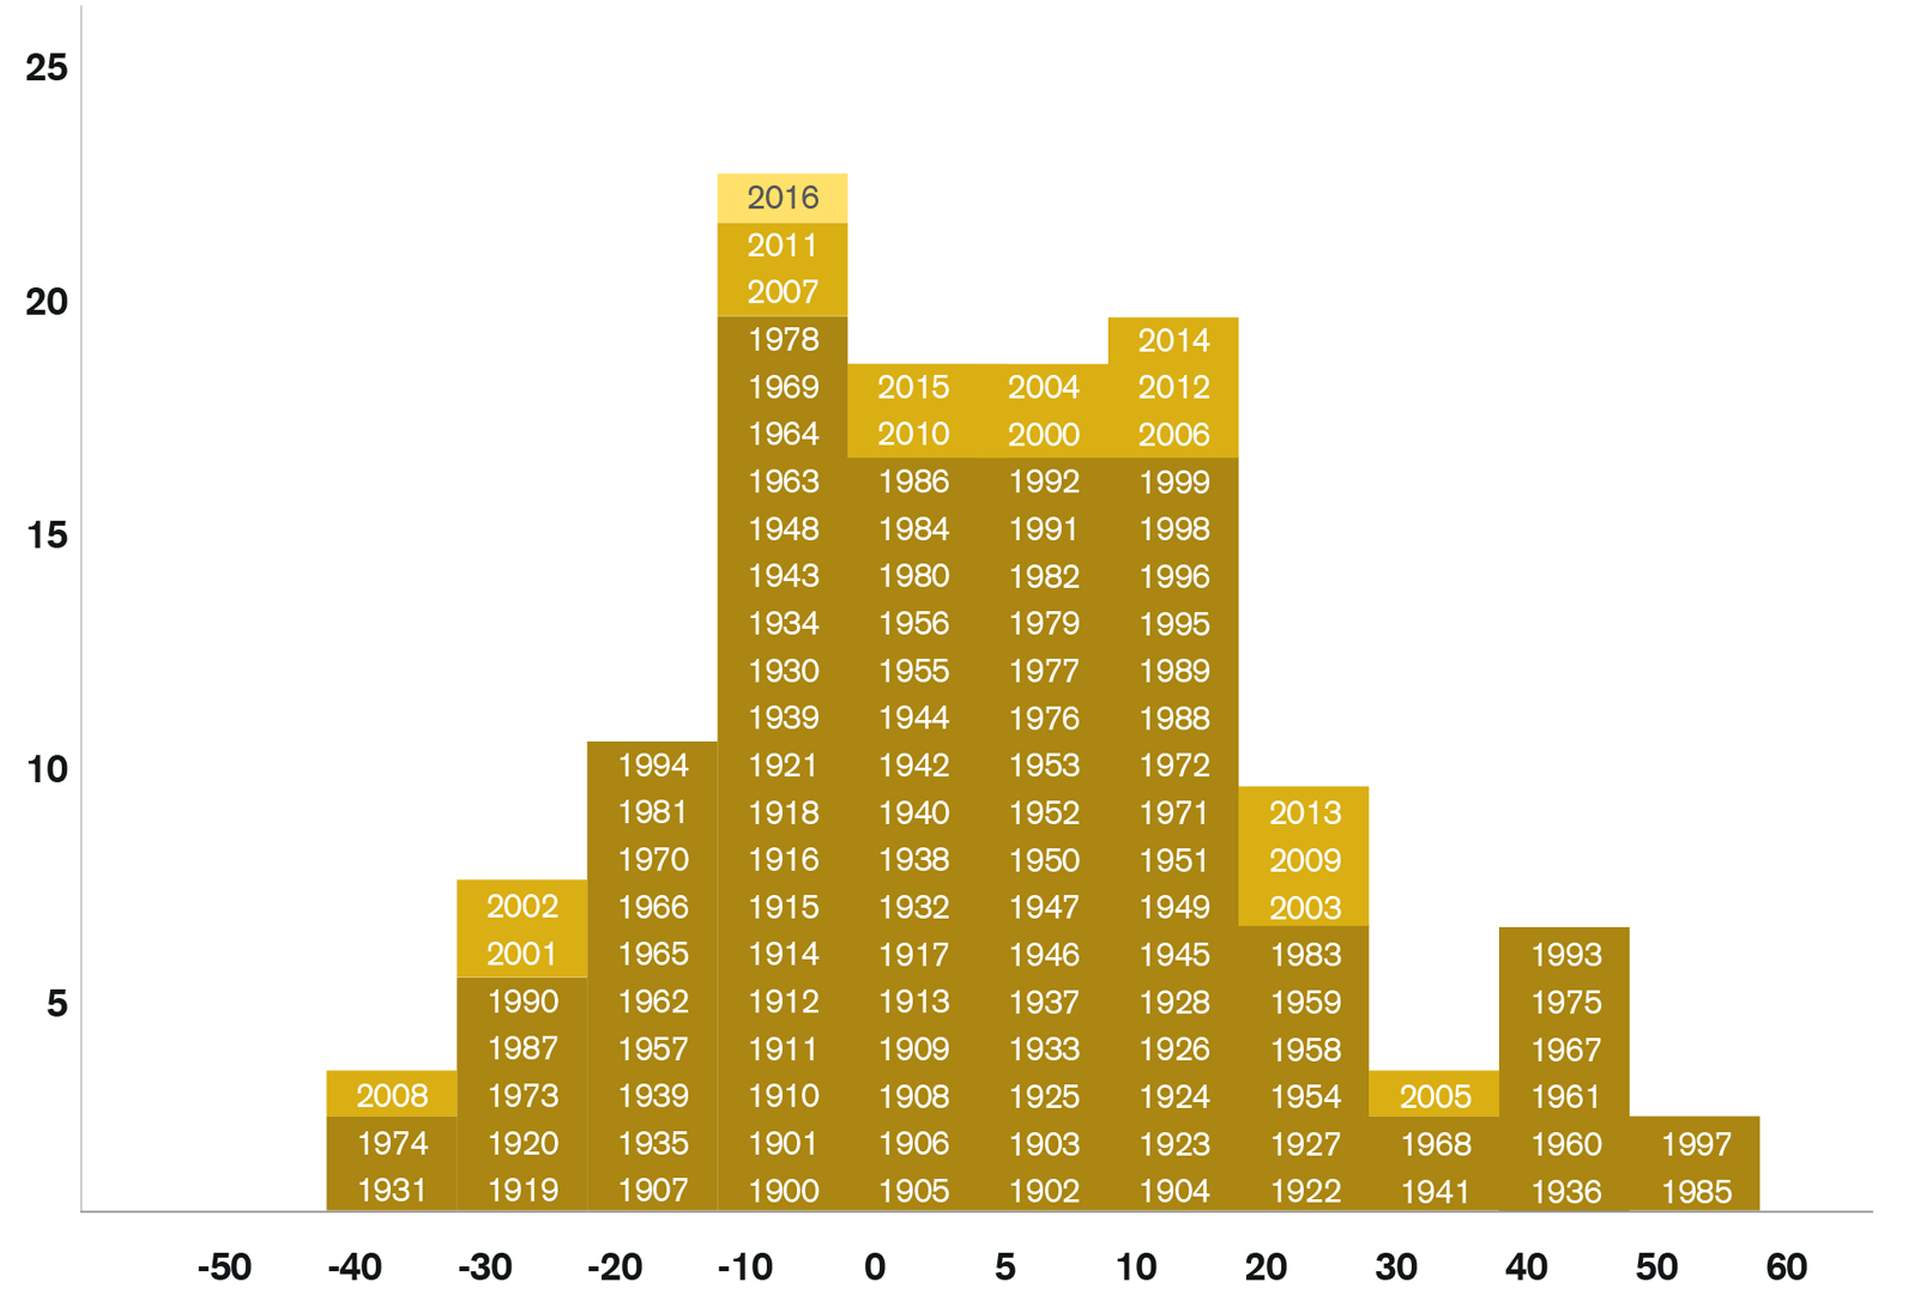 Häufigkeitsverteilung der jährlichen Renditen von Schweizer Aktien (1900 bis 2016)